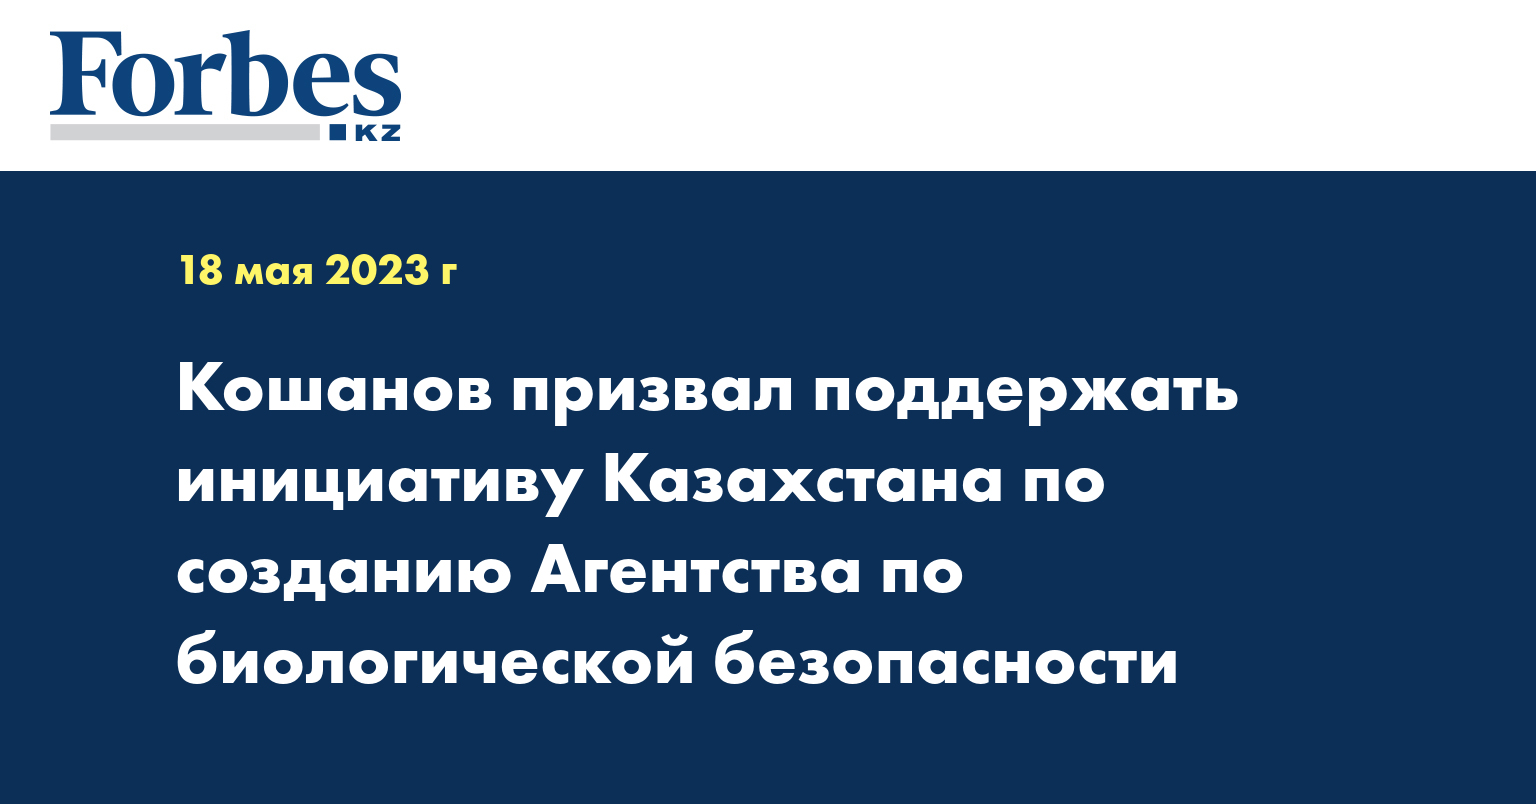 Кошанов призвал поддержать инициативу Казахстана по созданию Агентства по биологической безопасности